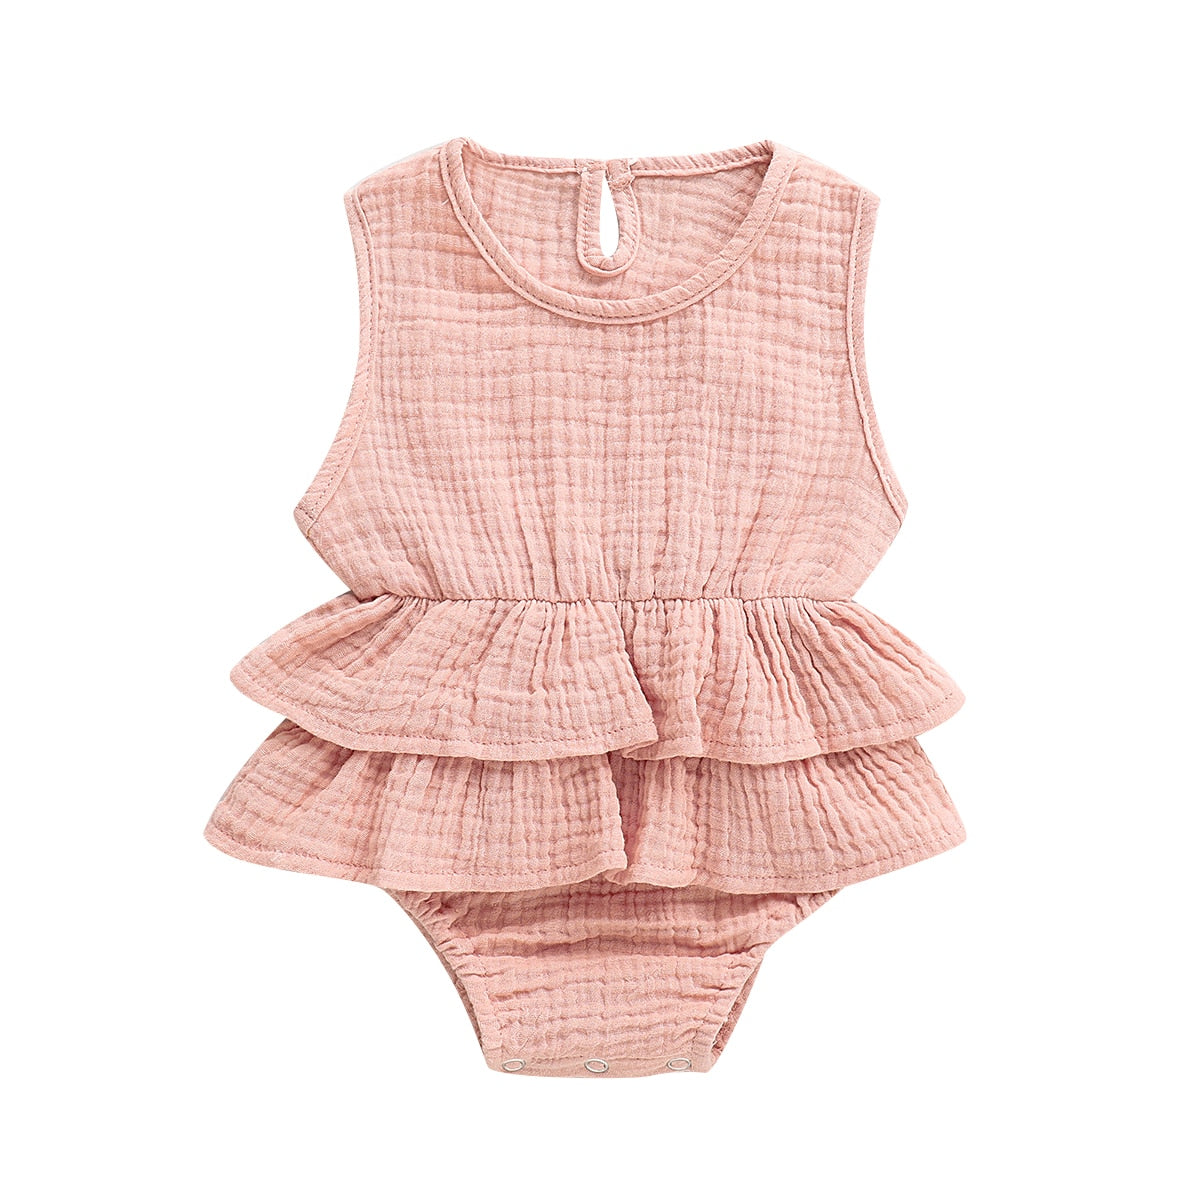 Baby Girl Summer Solid Ruffles Sleeveless Cotton Linen Sunsuit - Purplish Grey, Pink, White, Yellow, Purplish Red, Brick Red